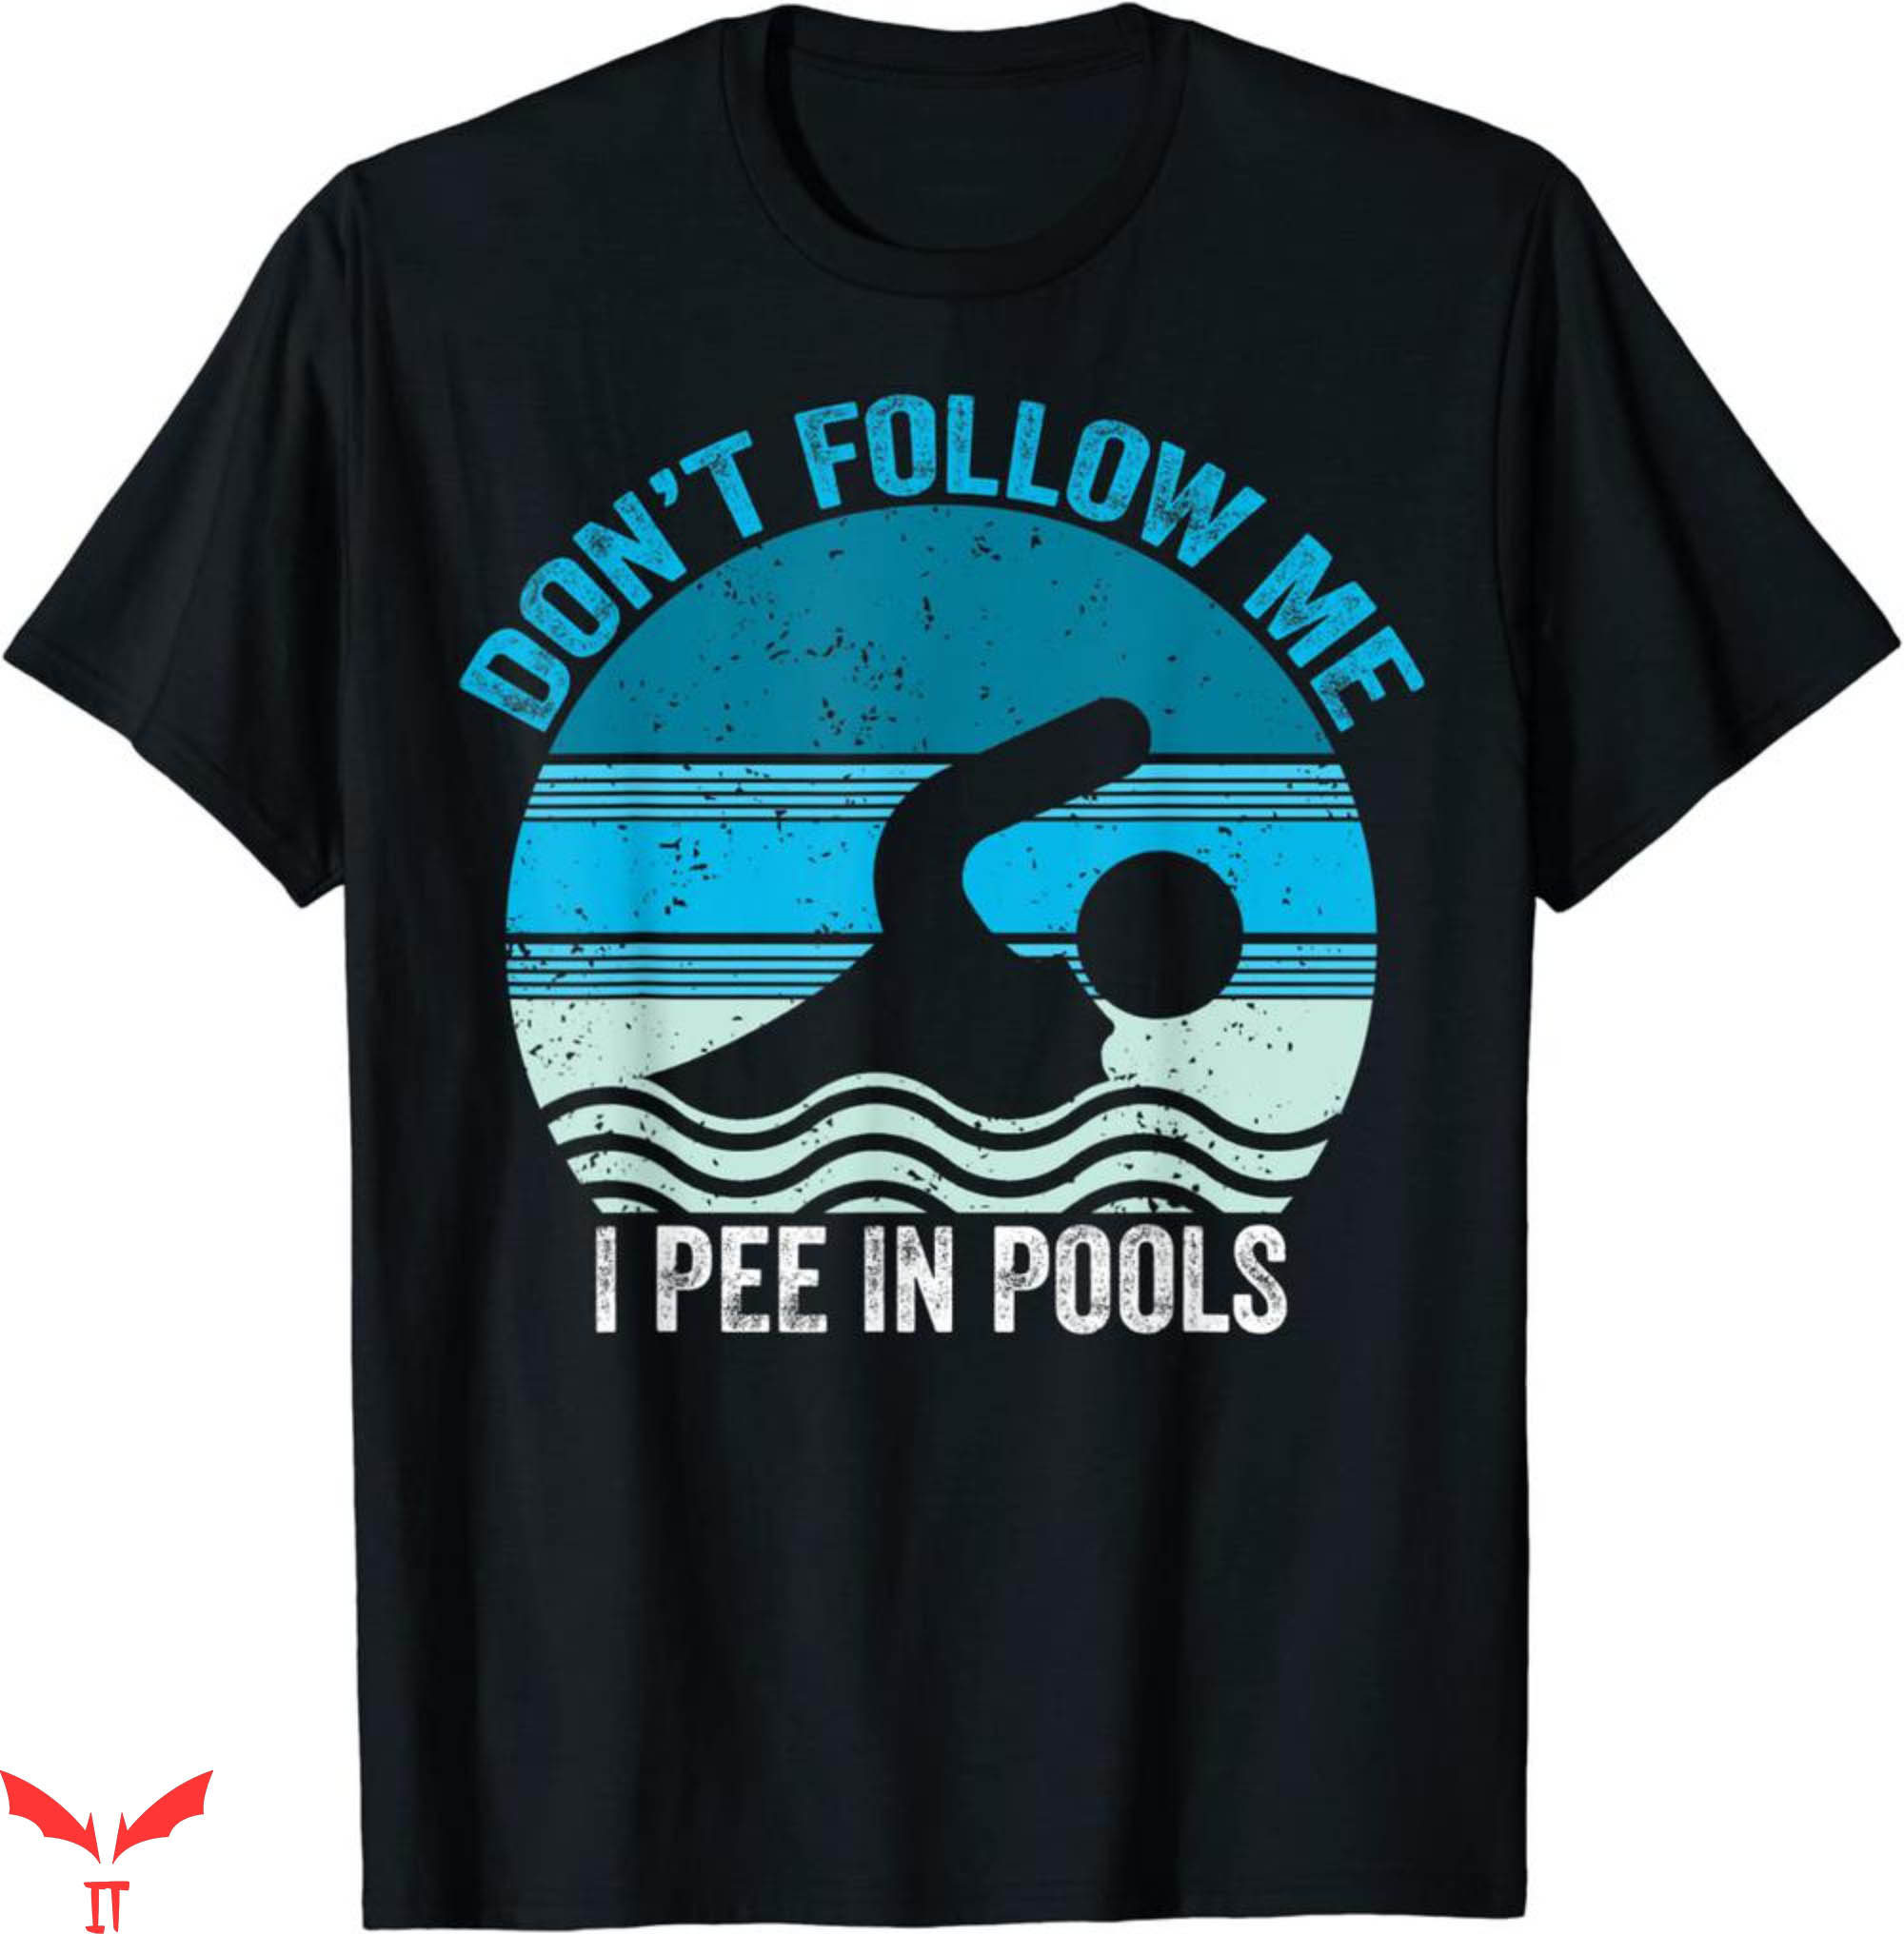 I Pee In Pools T-Shirt Don't Follow Me I Pee Swimming